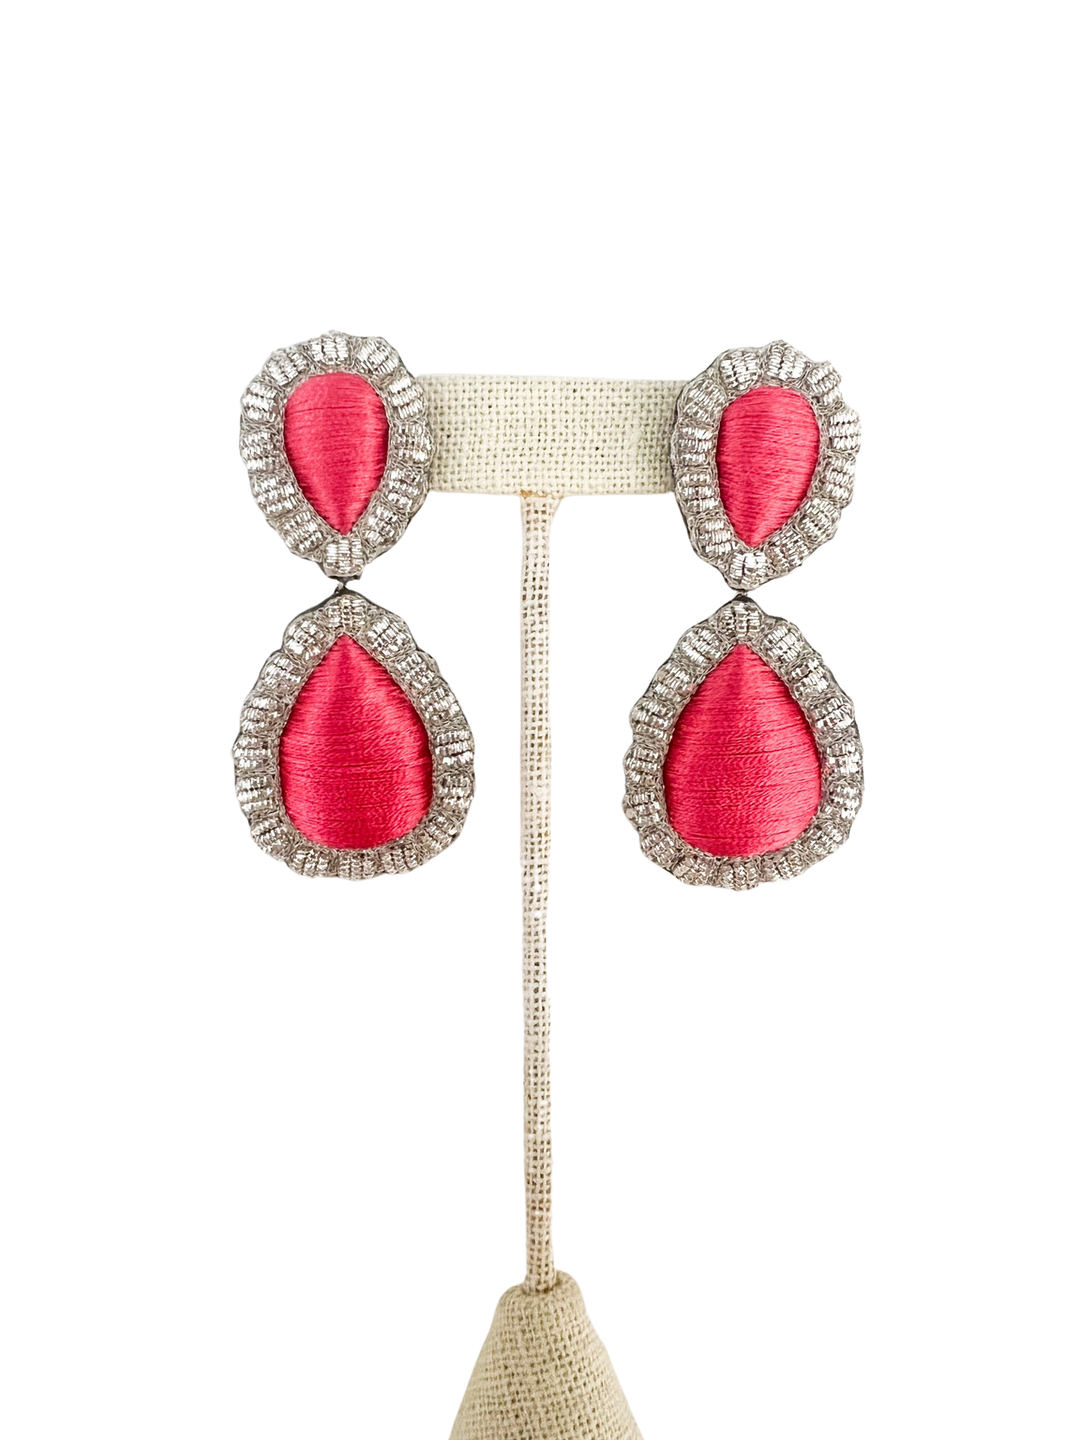 Sophia203 Jewelry Watermelon Pink Sophia 203 Jewelry | Giant Gem Earrings